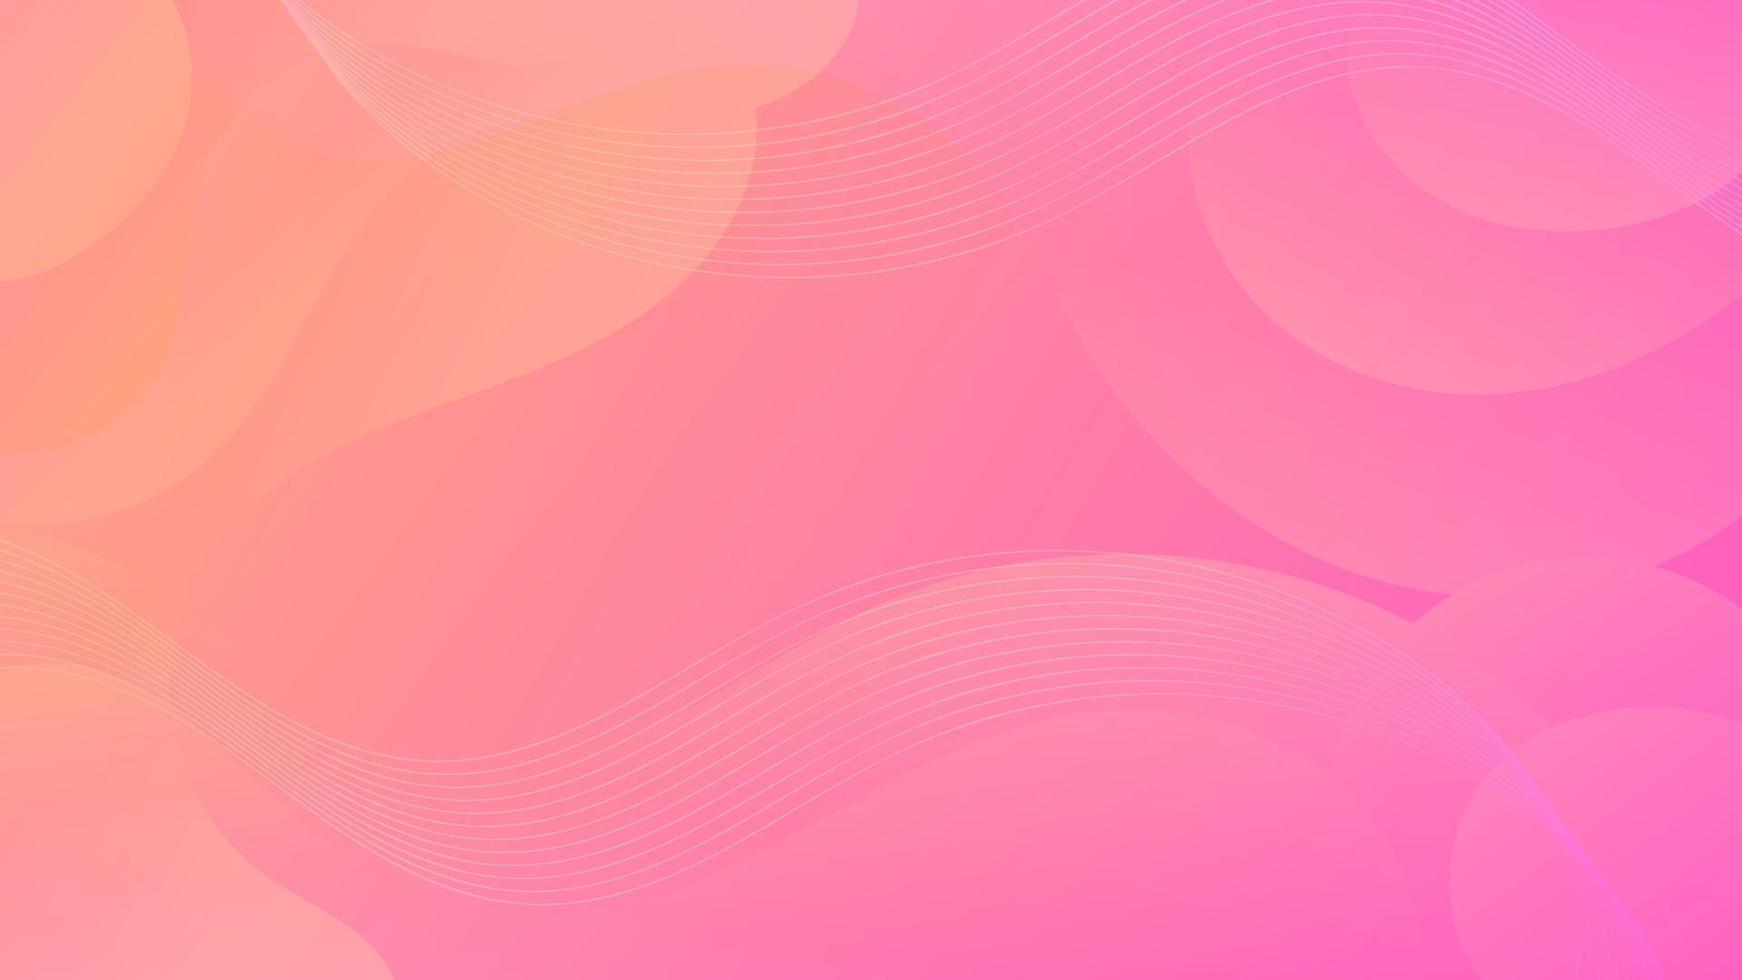 Abstract Gradient Pink Orange liquid Wave Background vector